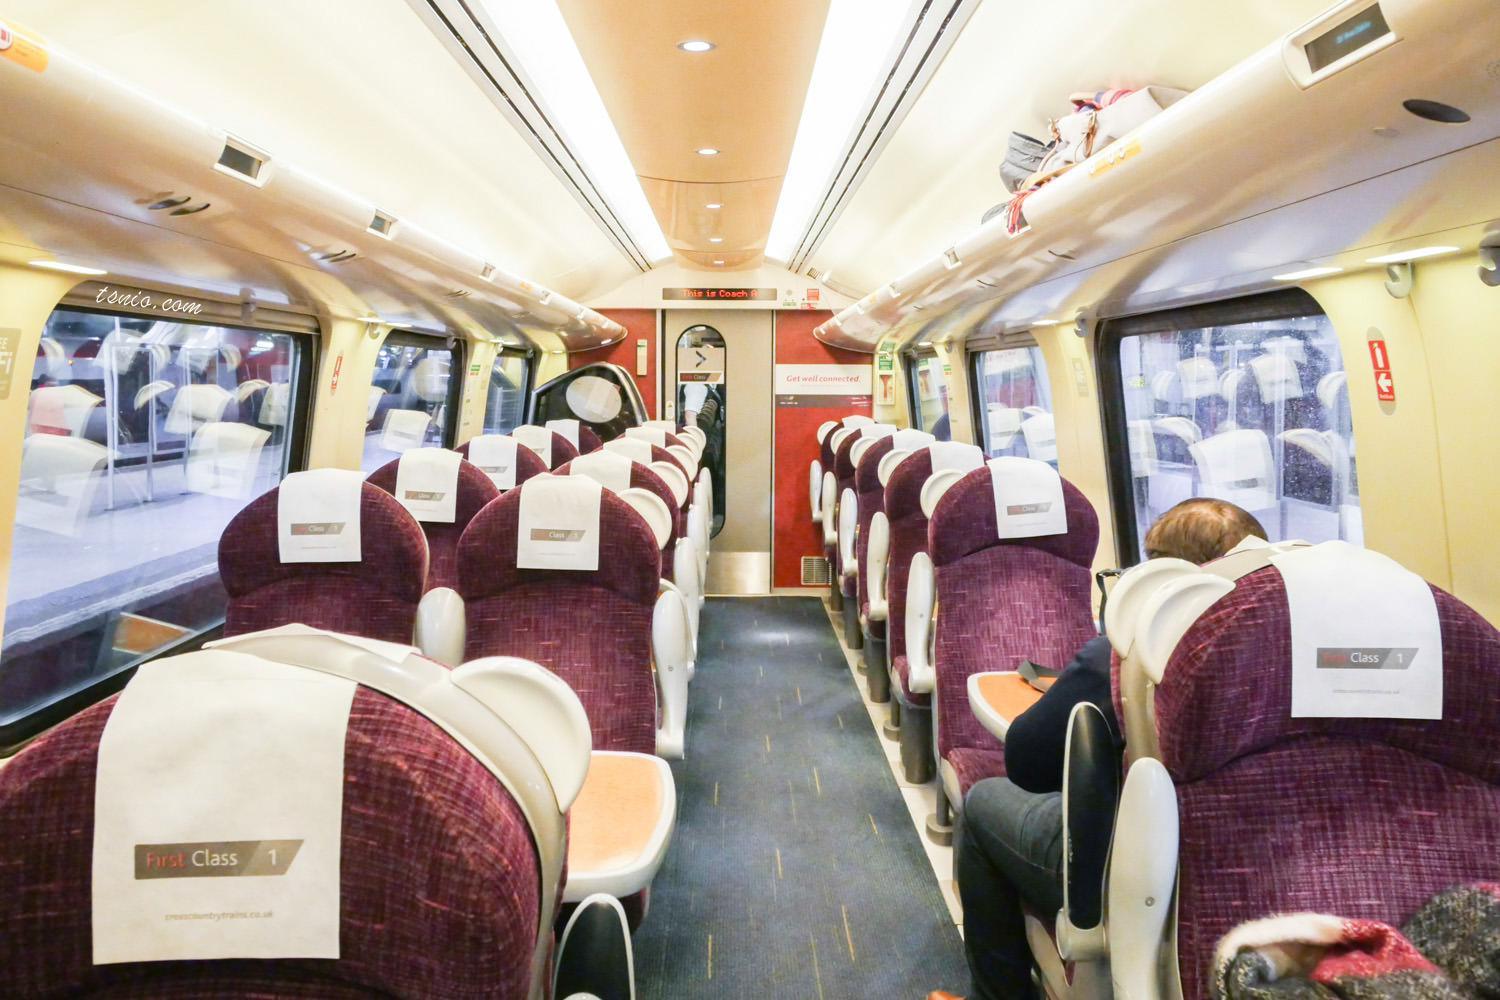 英國火車通行證 使用教學、搭乘心得 英國交通攻略